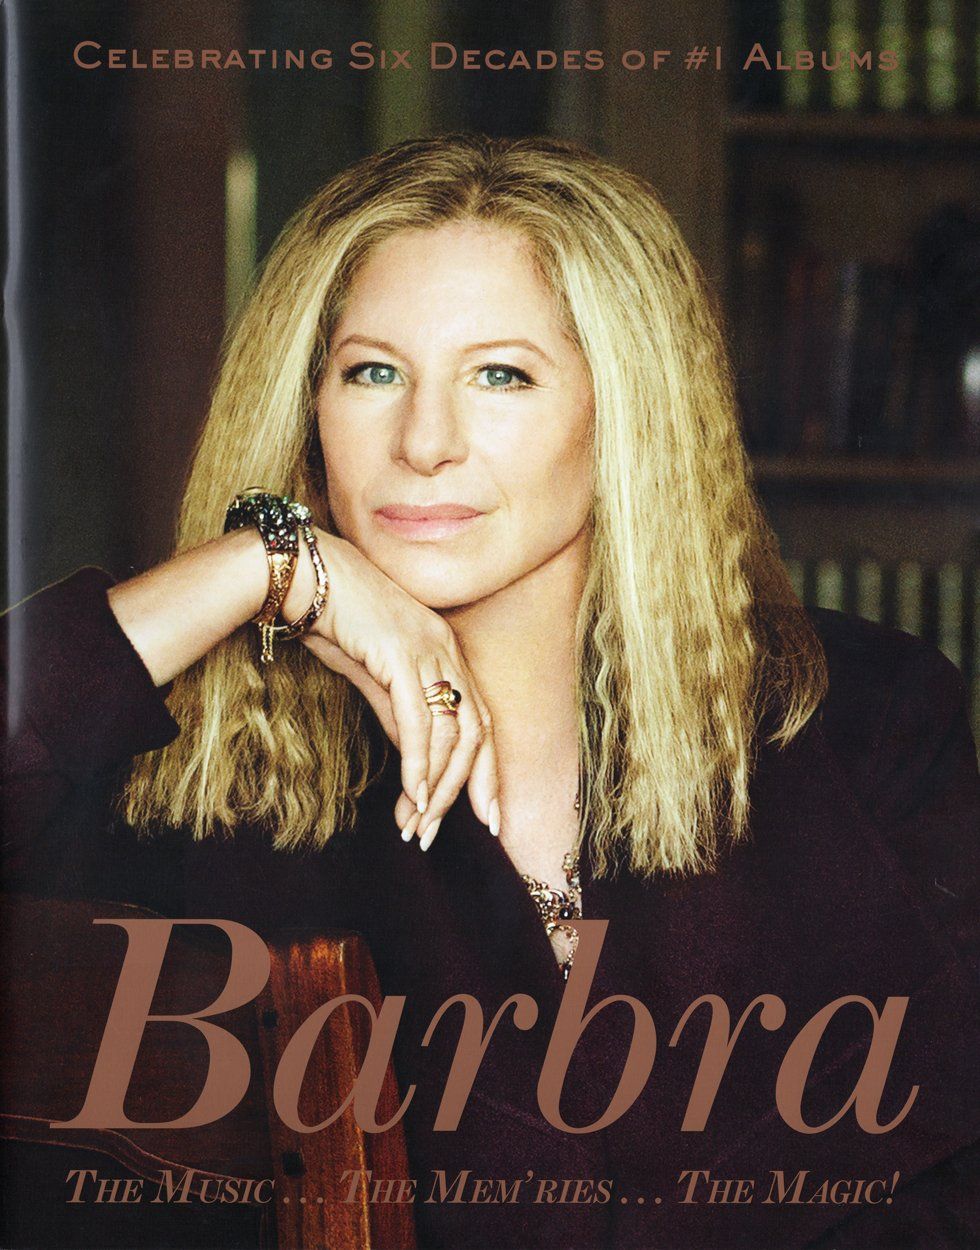 The cover of Barbra Streisand's 2016 Concert Tour program.